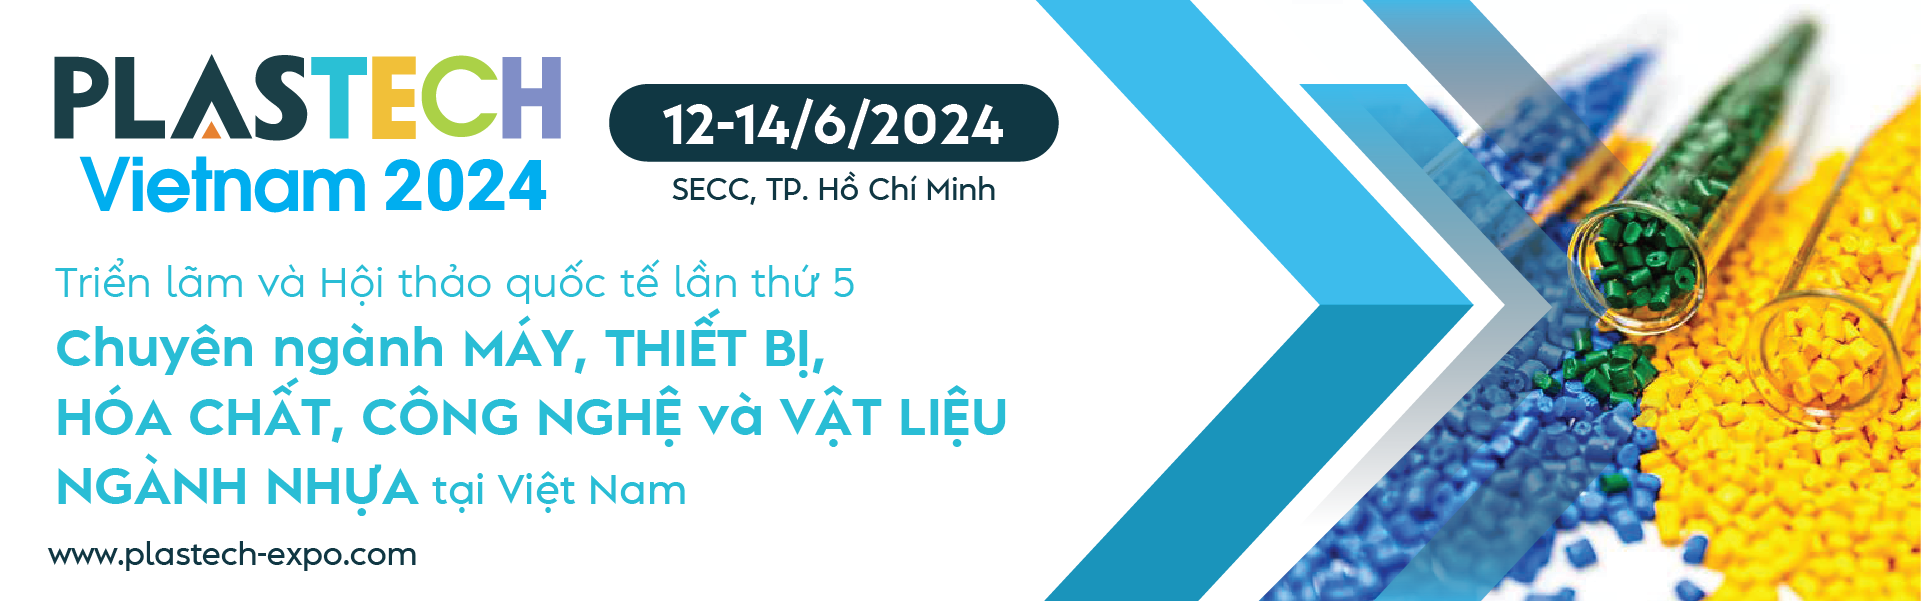 PLASTECH VIETNAM 2024 - Triển lãm và hội thảo quốc tế về máy, thiết bị, công nghệ và nguyên phụ liệu ngành nhựa tại Việt Nam